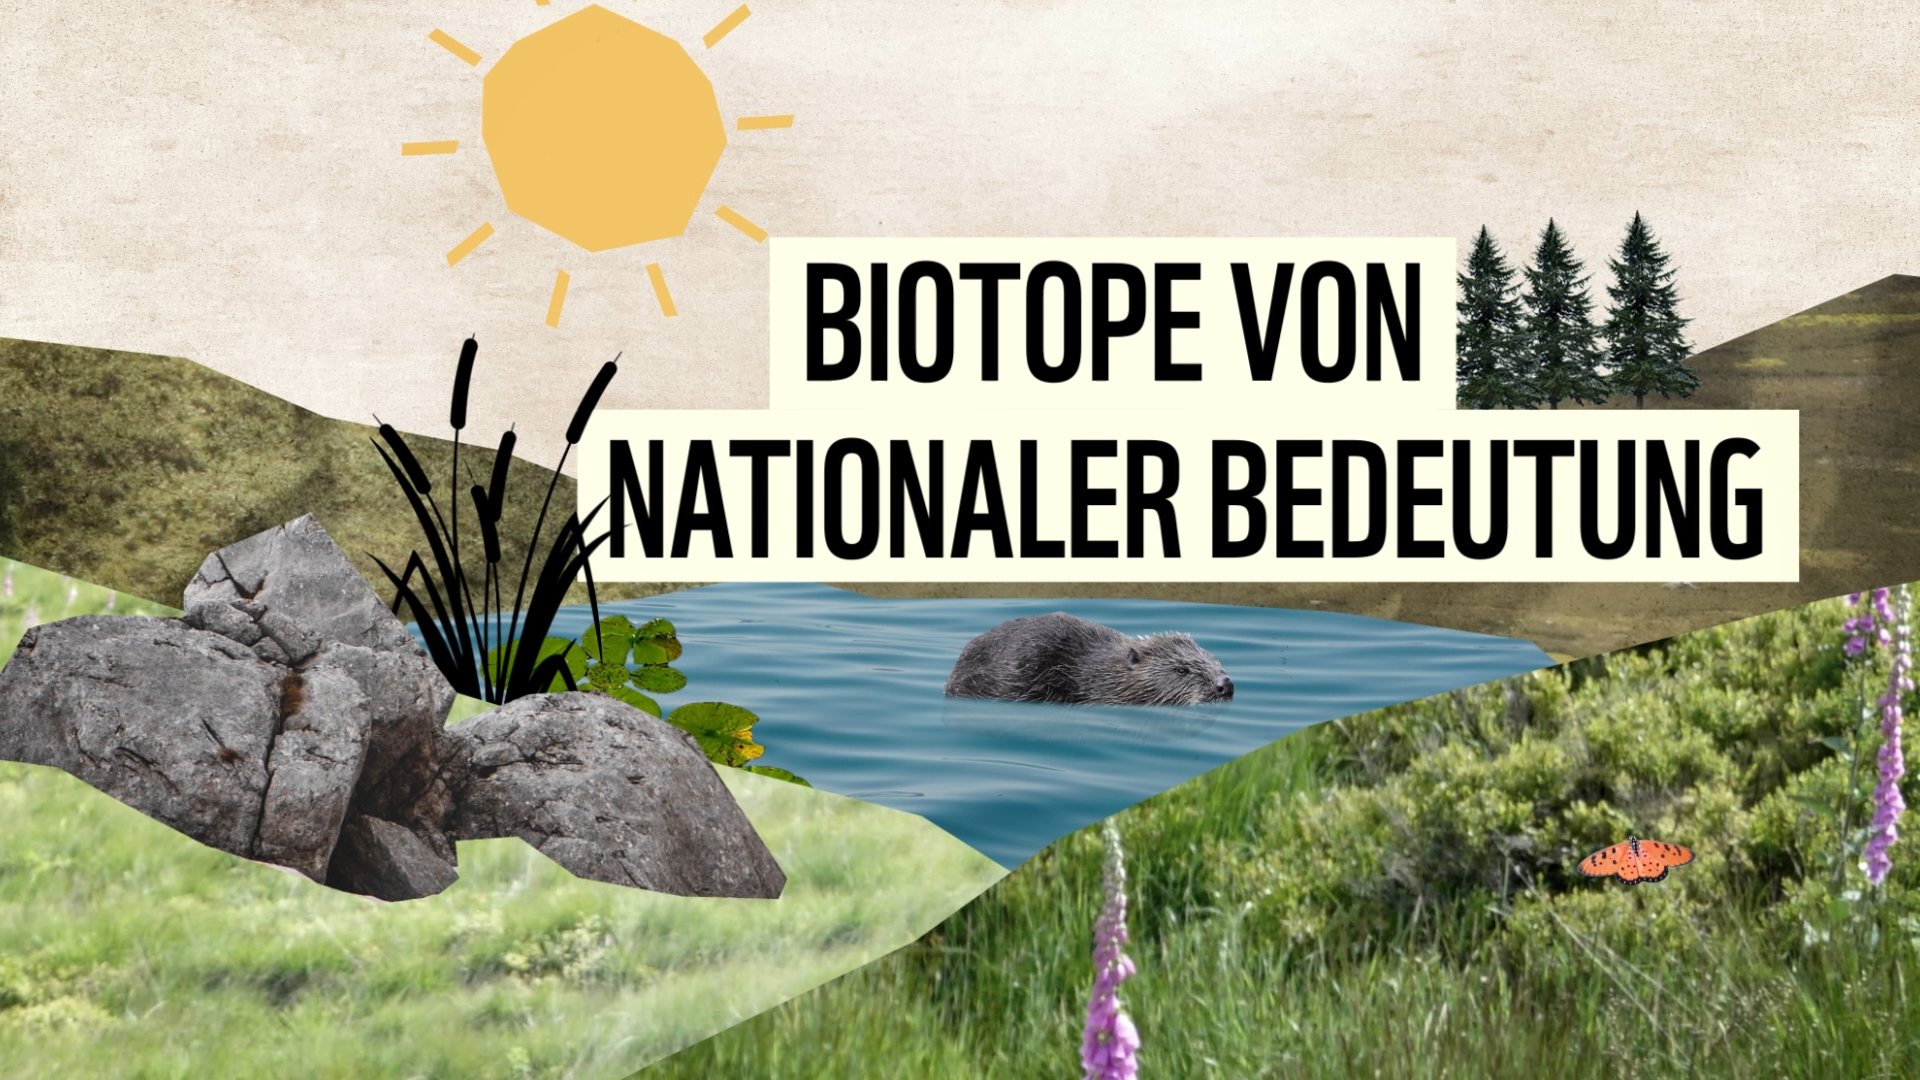 WWF – Biotope von nationaler Bedeutung